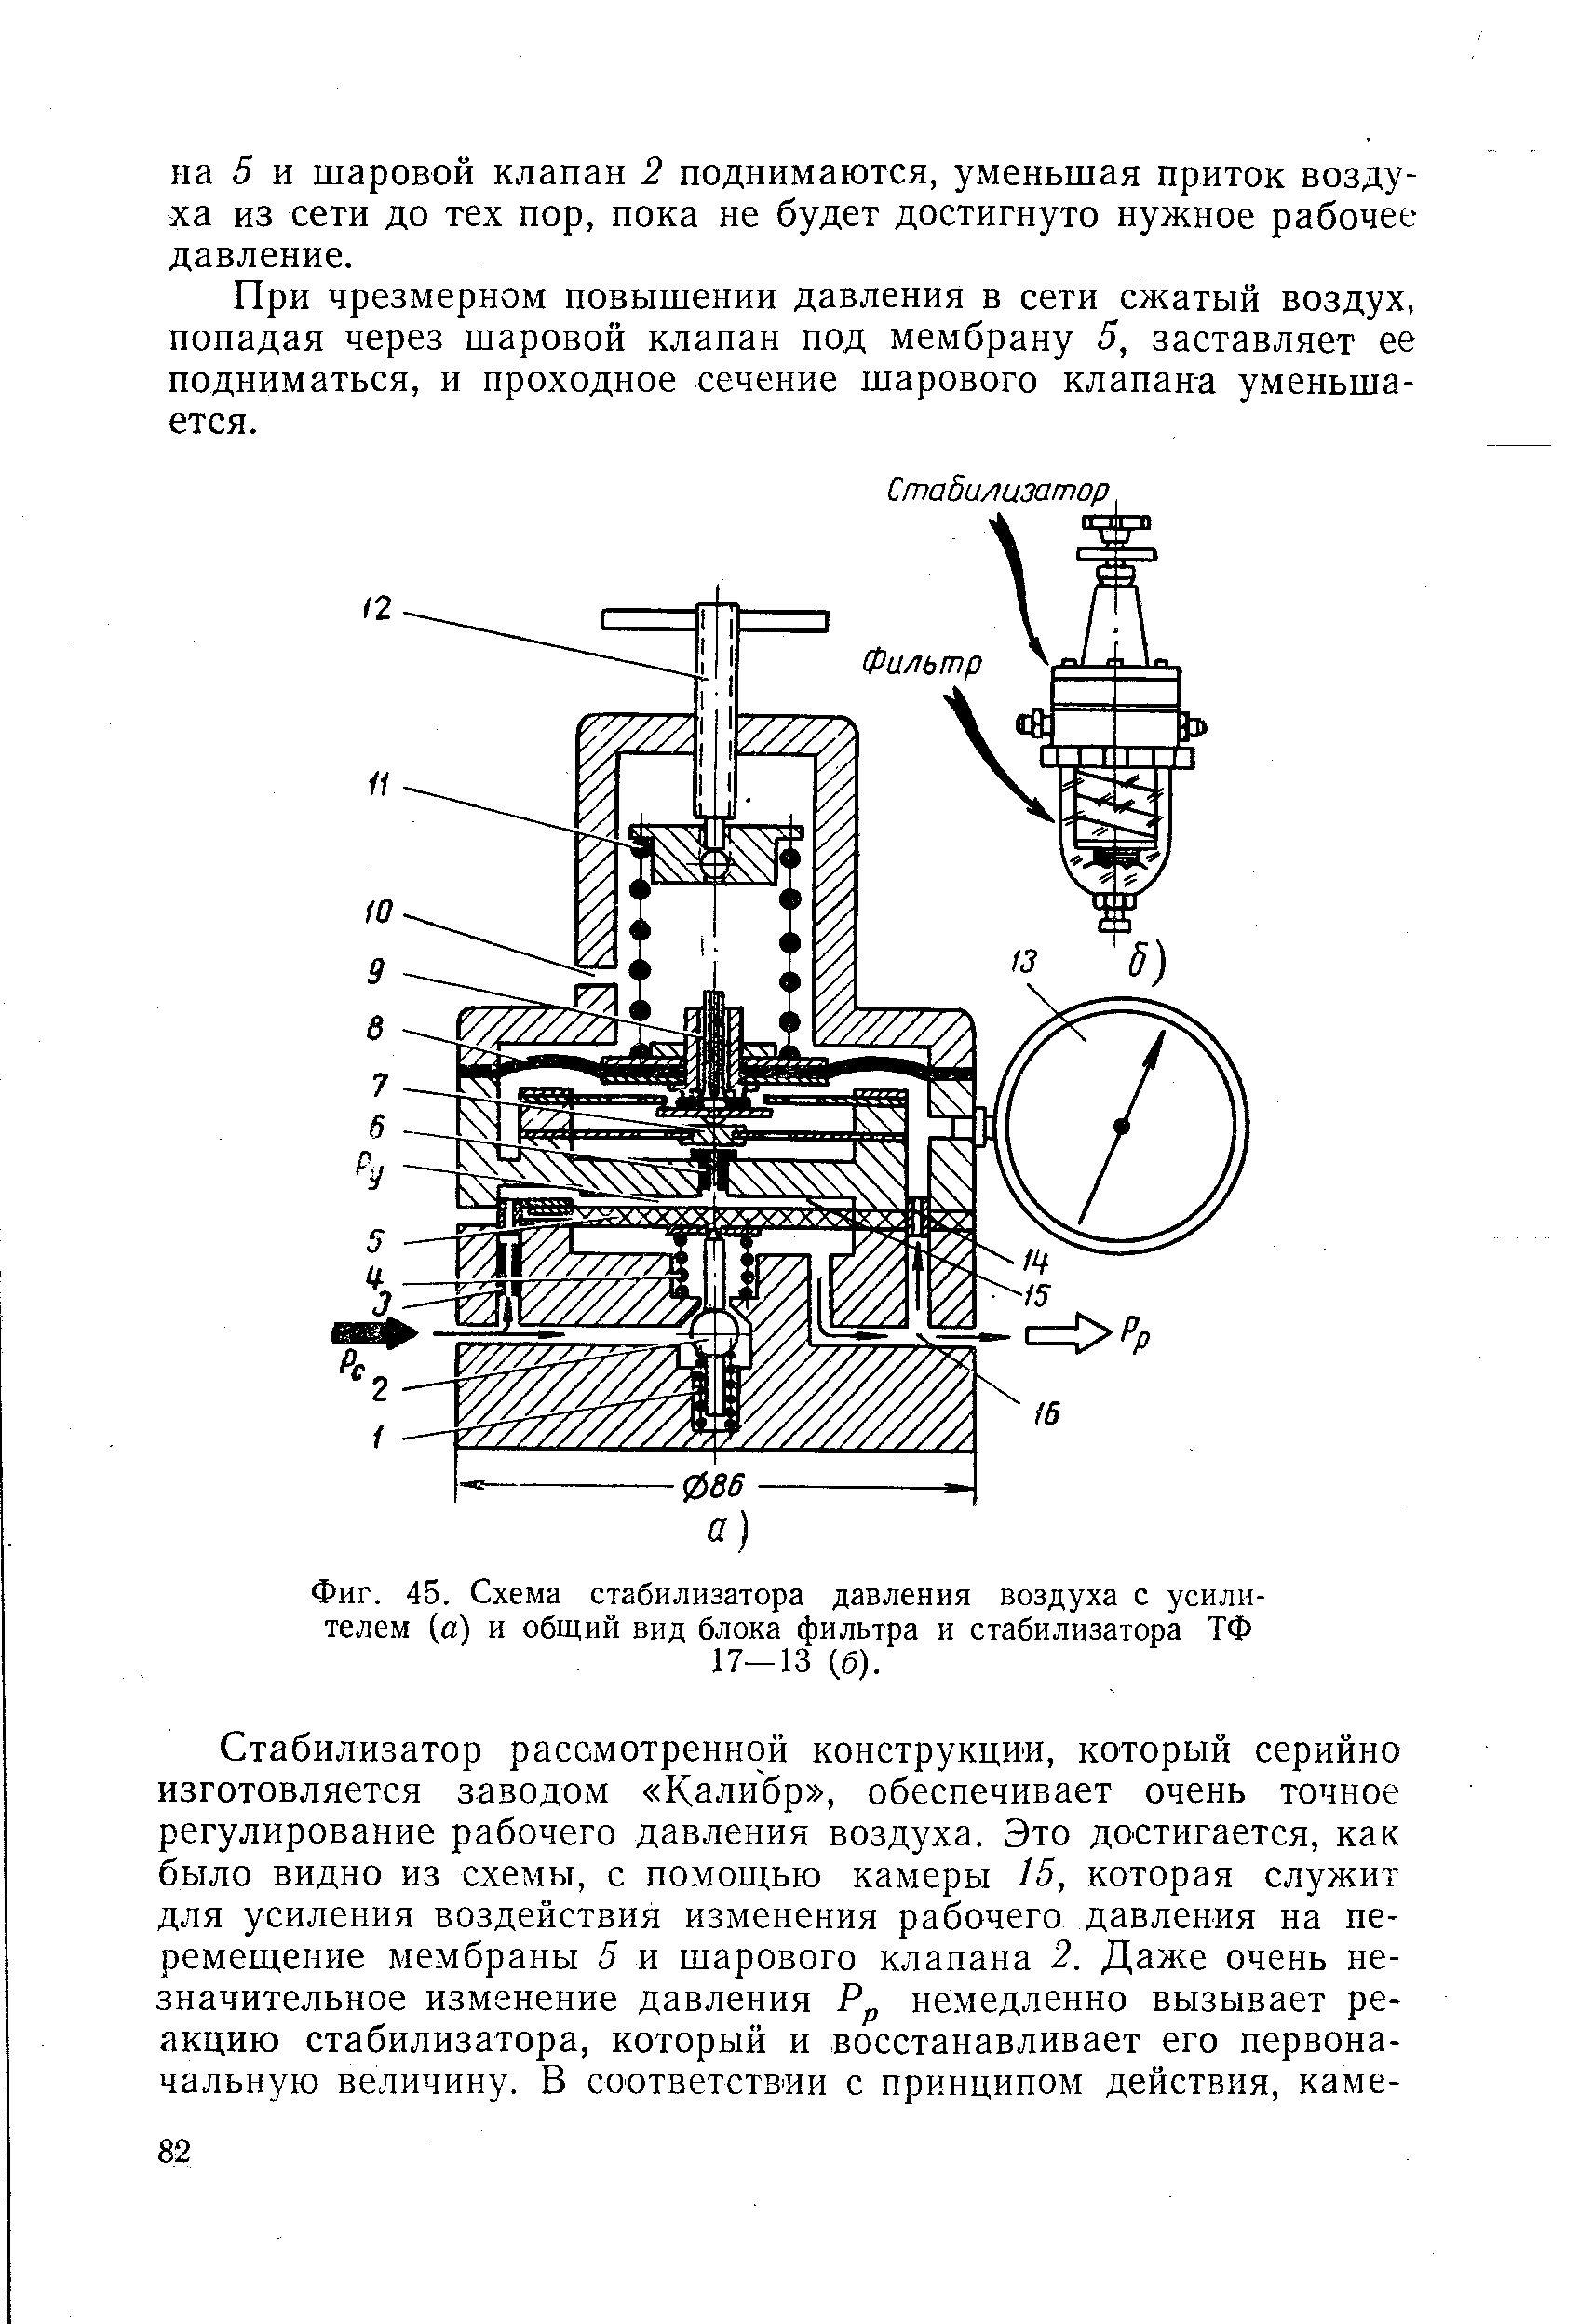 Фиг. 45. Схема стабилизатора давления воздуха с усилителем (а) и общий вид блока фильтра и стабилизатора ТФ 17-13 (б).
